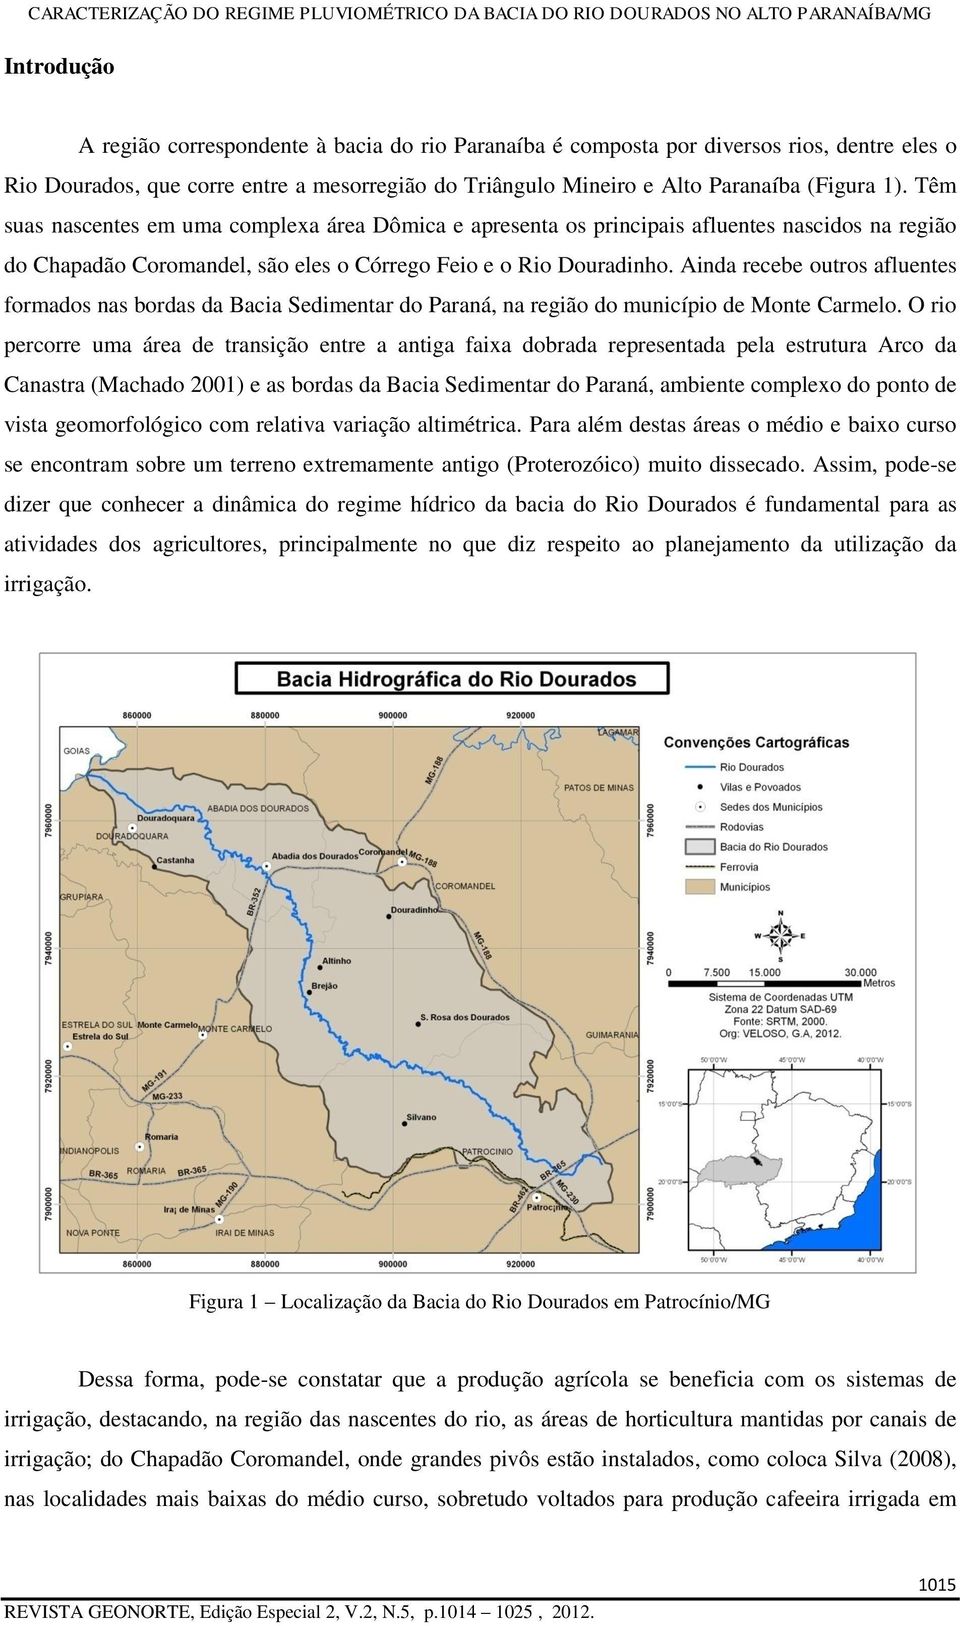 Ainda recebe outros afluentes formados nas bordas da Bacia Sedimentar do Paraná, na região do município de Monte Carmelo.